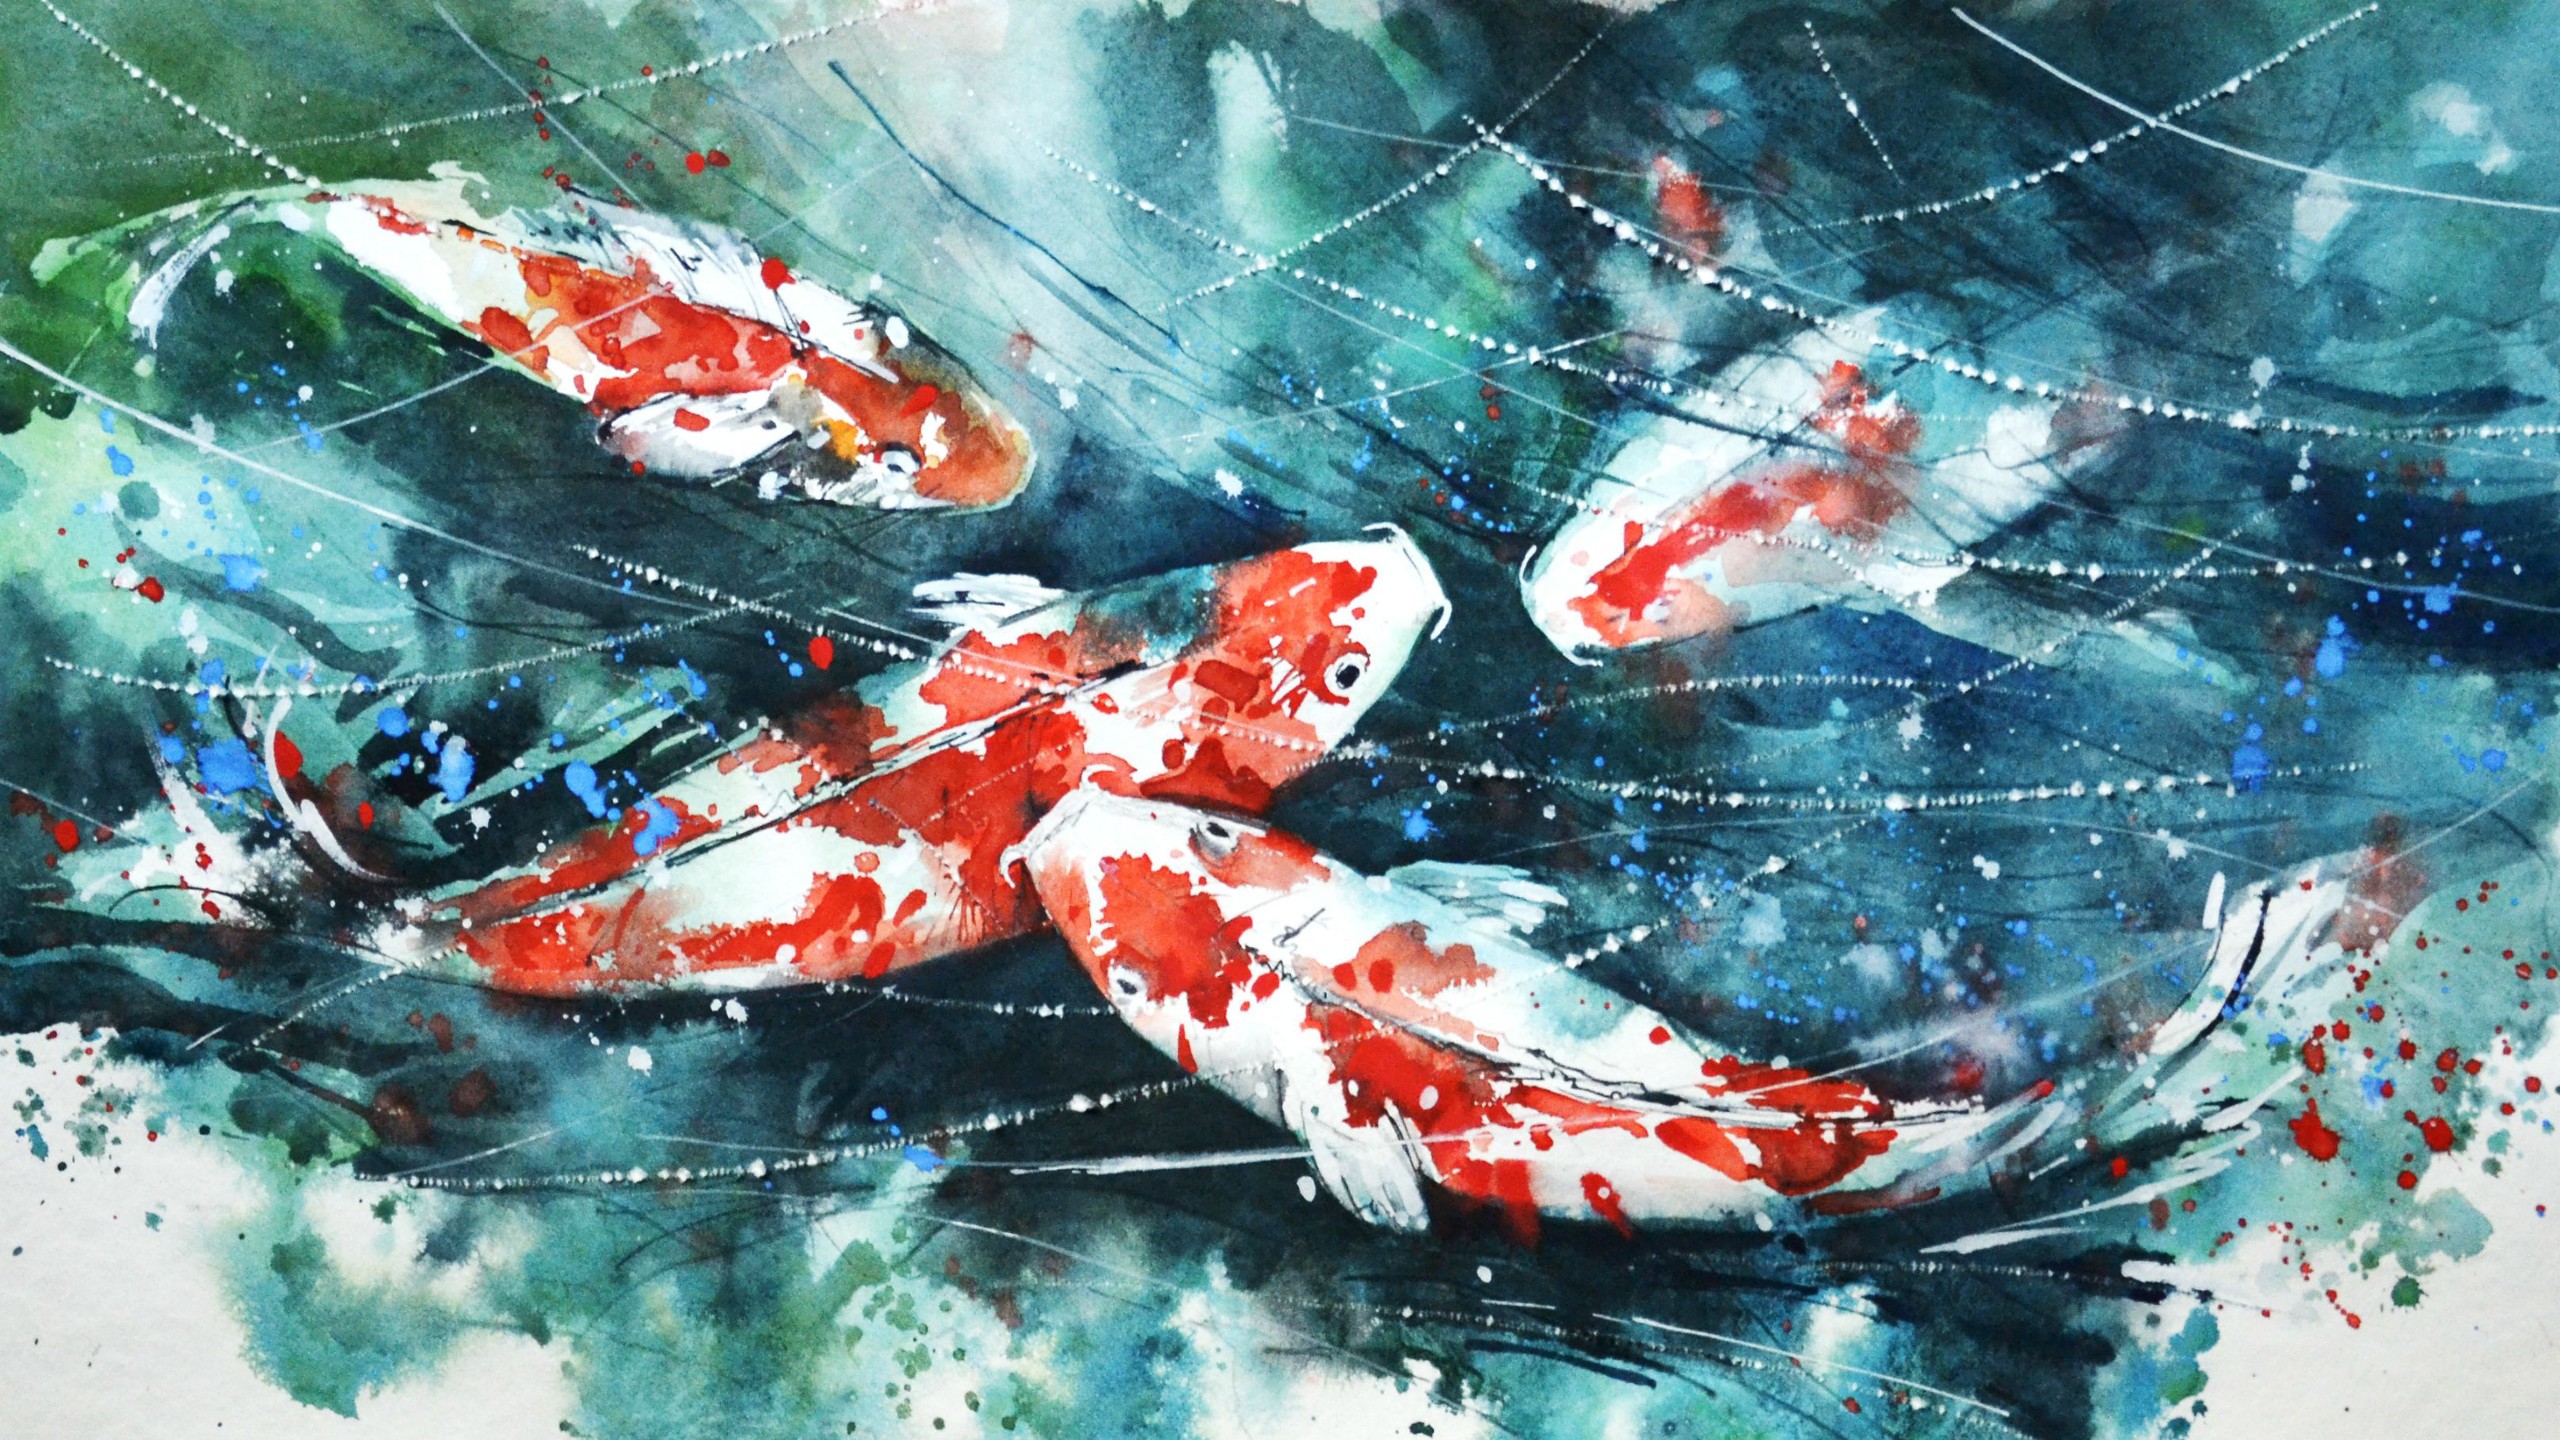 koi, Painting, Watercolor, Fish, Artwork, Paint splatter Wallpaper